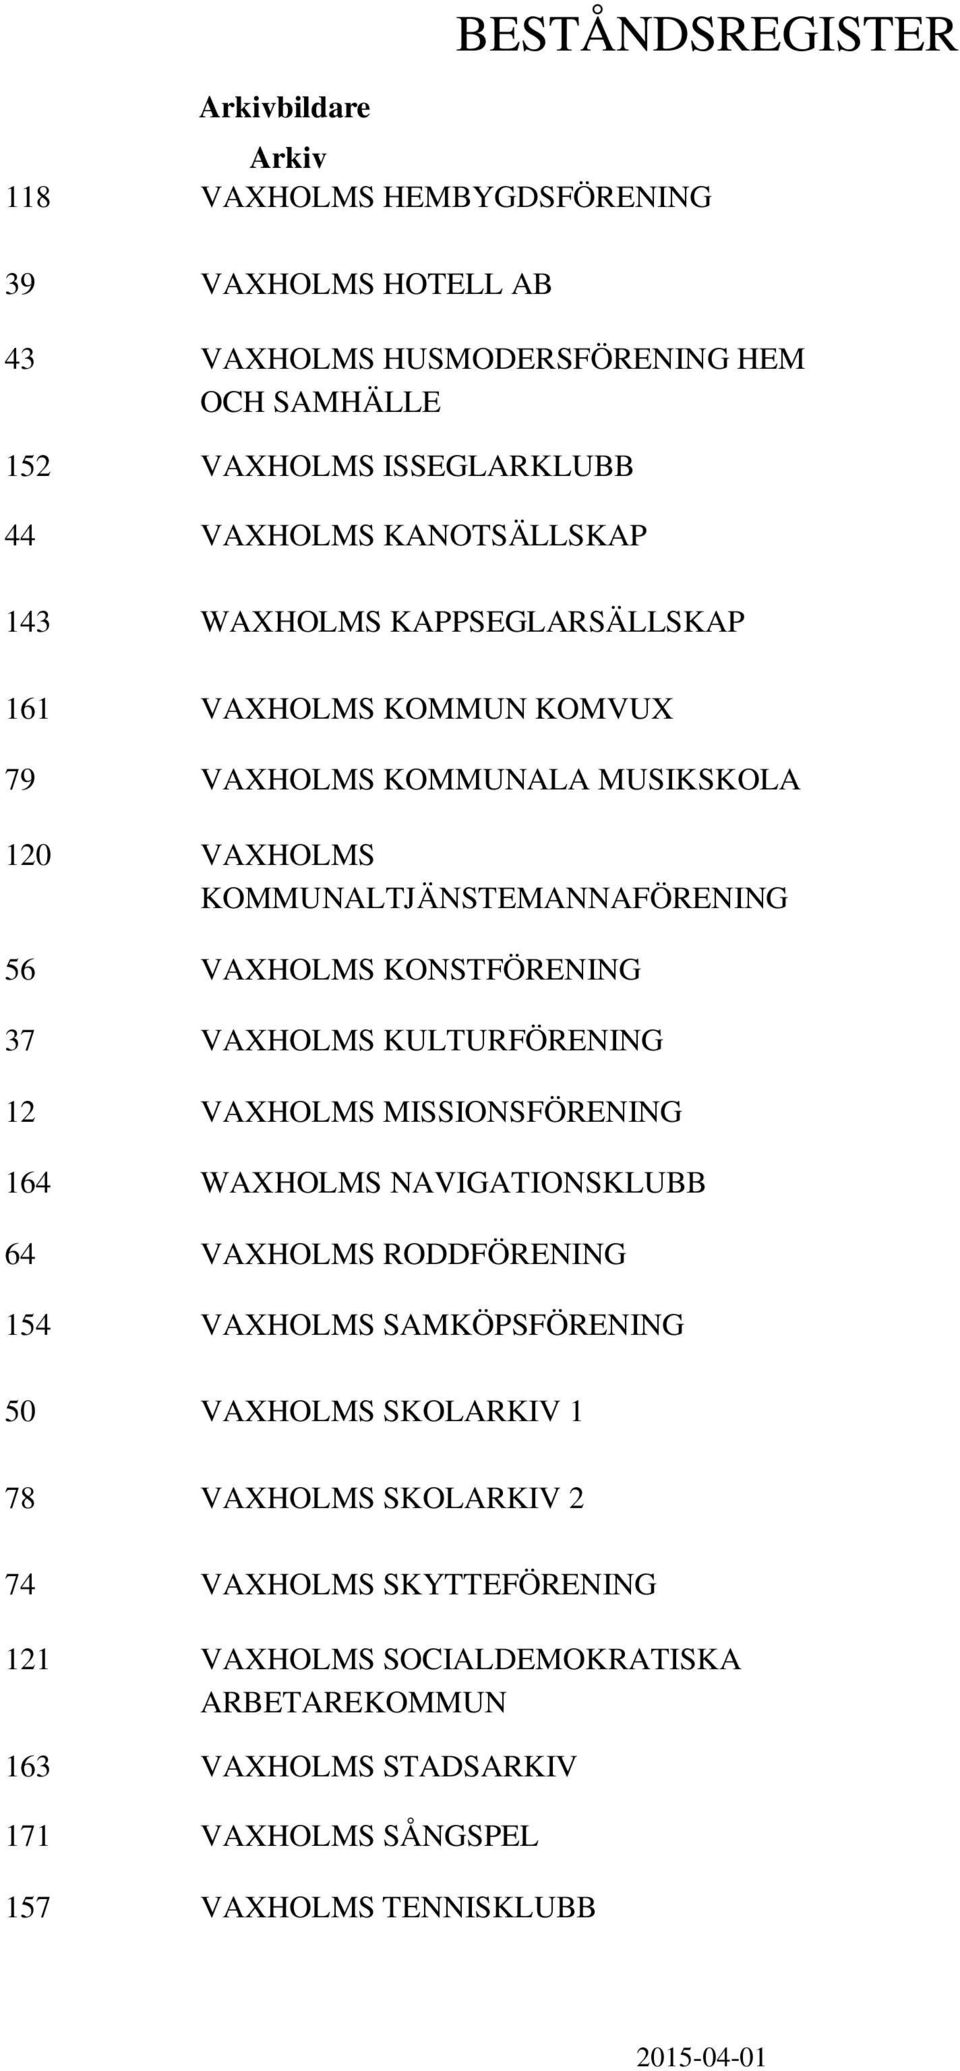 KONSTFÖRENING 37 VAXHOLMS KULTURFÖRENING 12 VAXHOLMS MISSIONSFÖRENING 164 WAXHOLMS NAVIGATIONSKLUBB 64 VAXHOLMS RODDFÖRENING 154 VAXHOLMS SAMKÖPSFÖRENING 50 VAXHOLMS